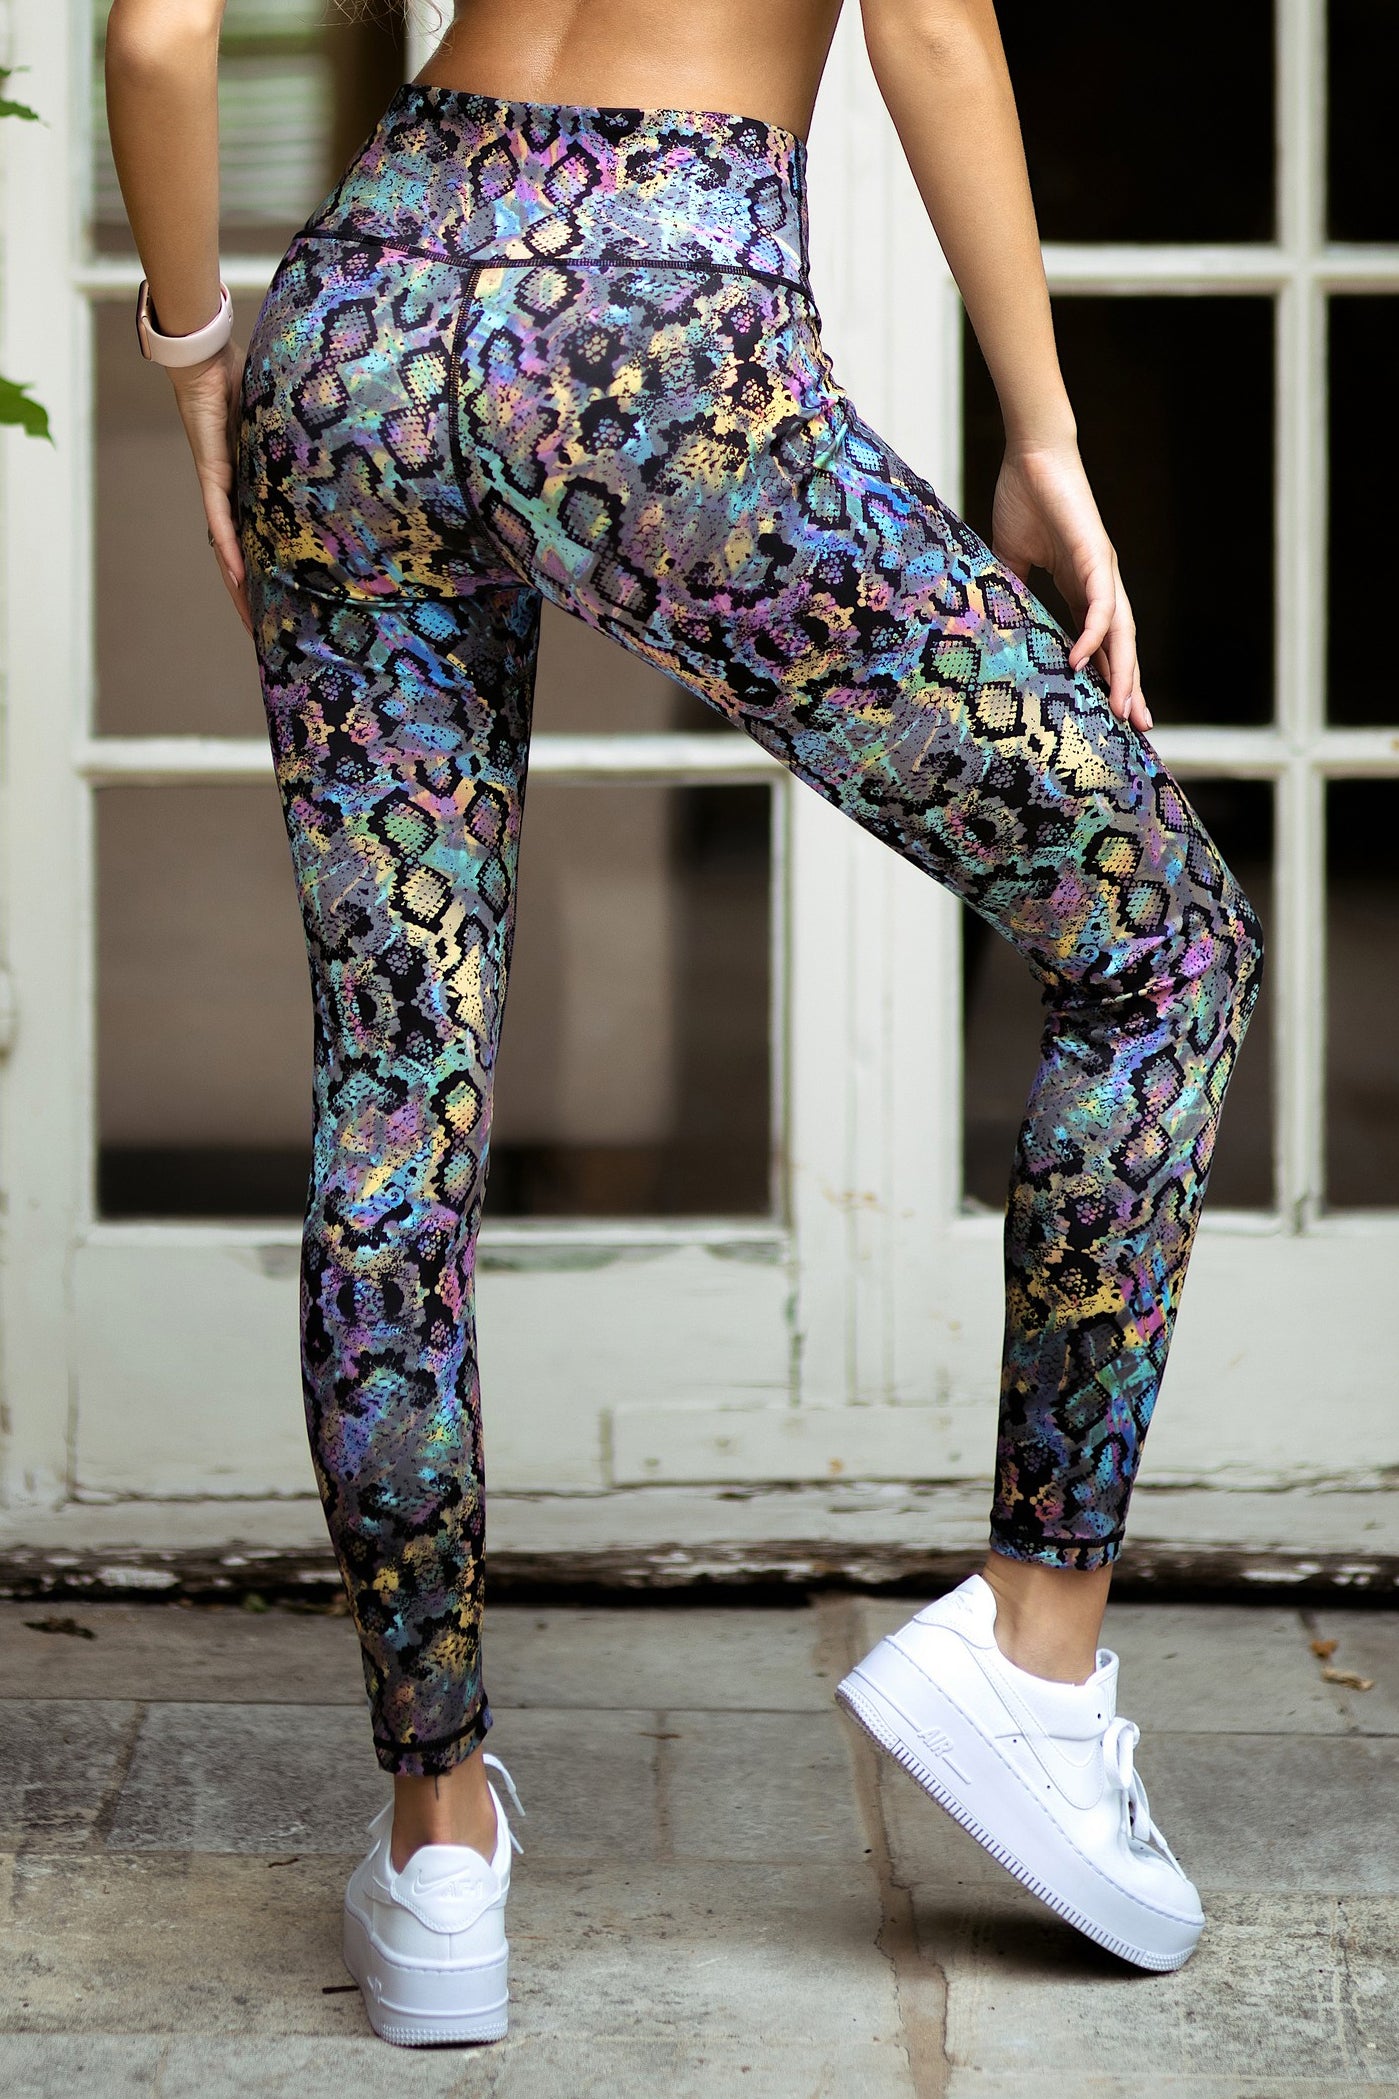 Colorful Pants, Graphic Print Leggings